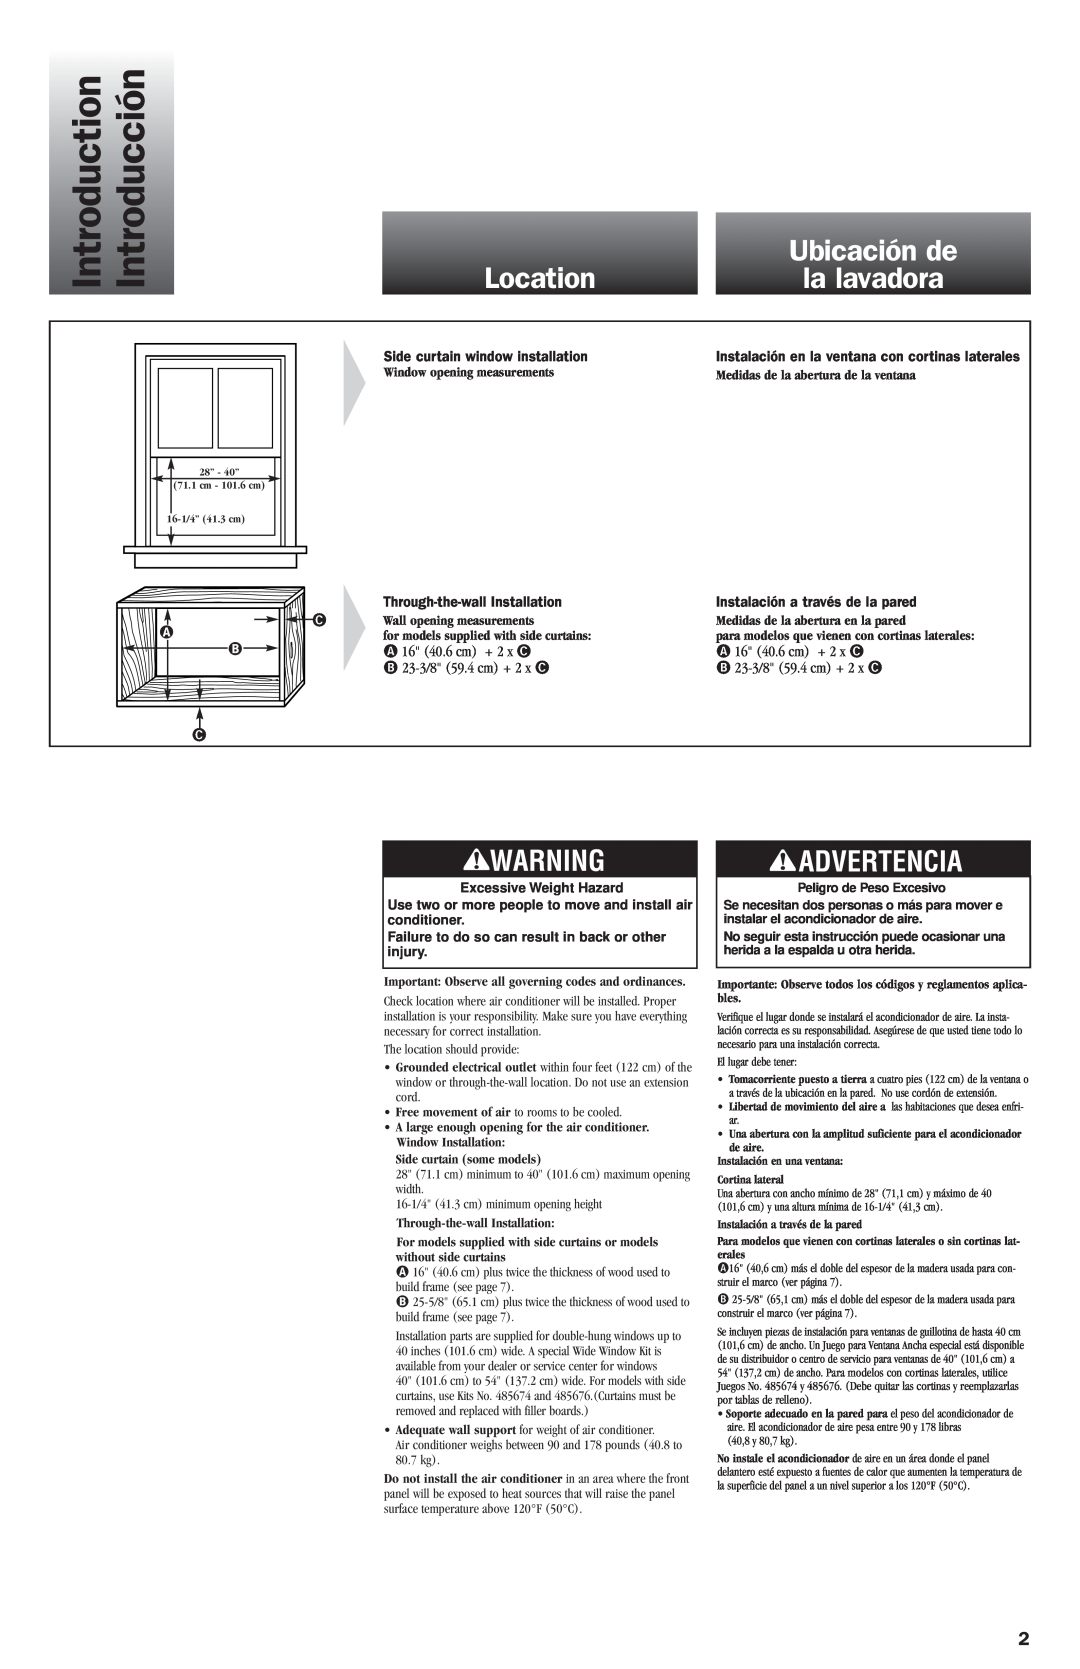 Whirlpool ACE082XH0 manual Introduction, Introducción, Location, Ubicación de, la lavadora, Advertencia, 16 40.6 cm + 